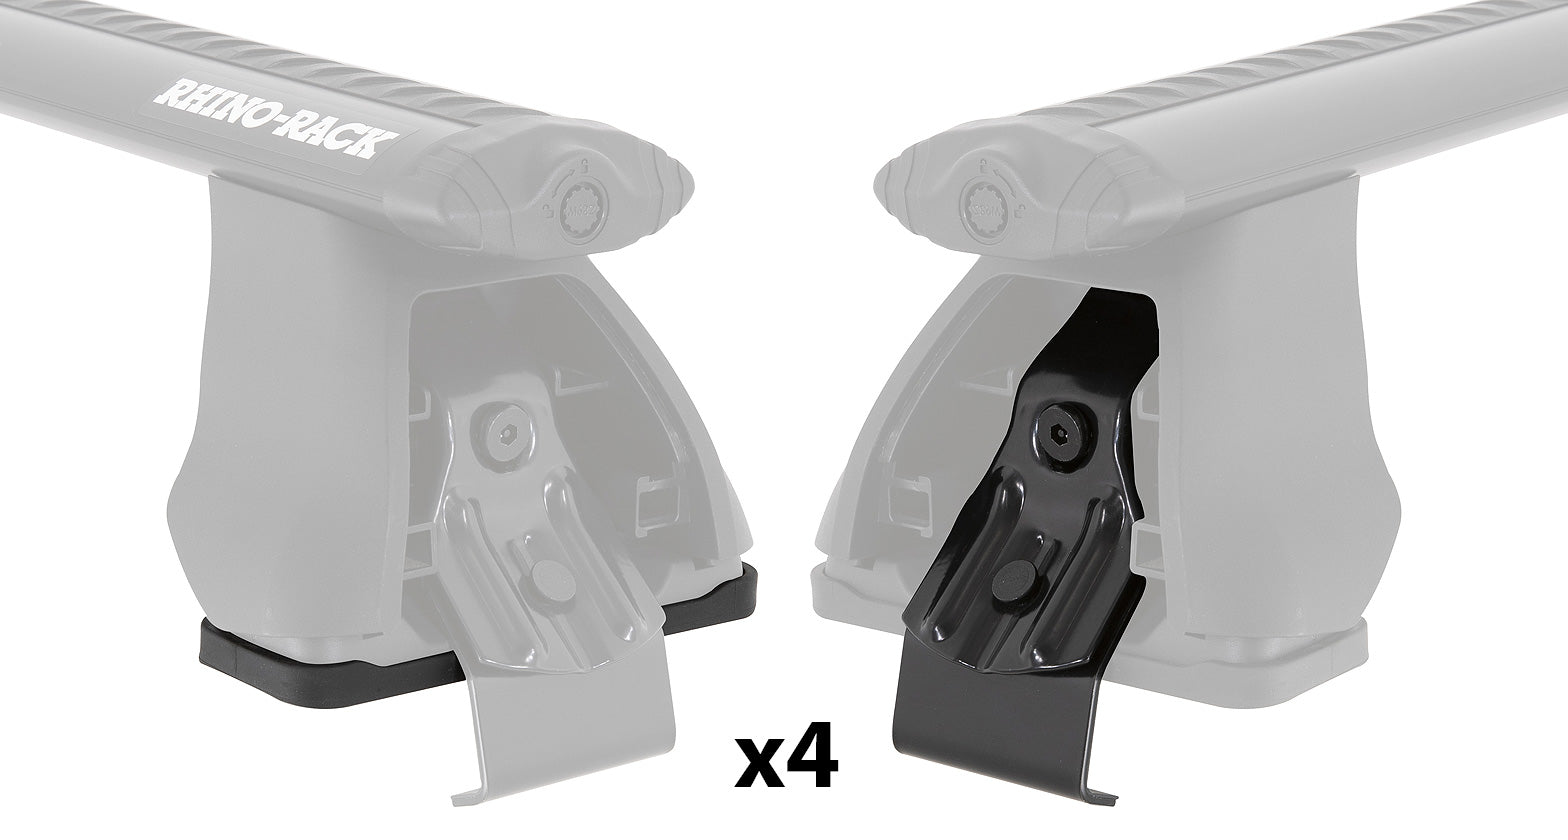 PAD & CLAMP KIT FOR RHINO 2500 MULTI FIT - DK226